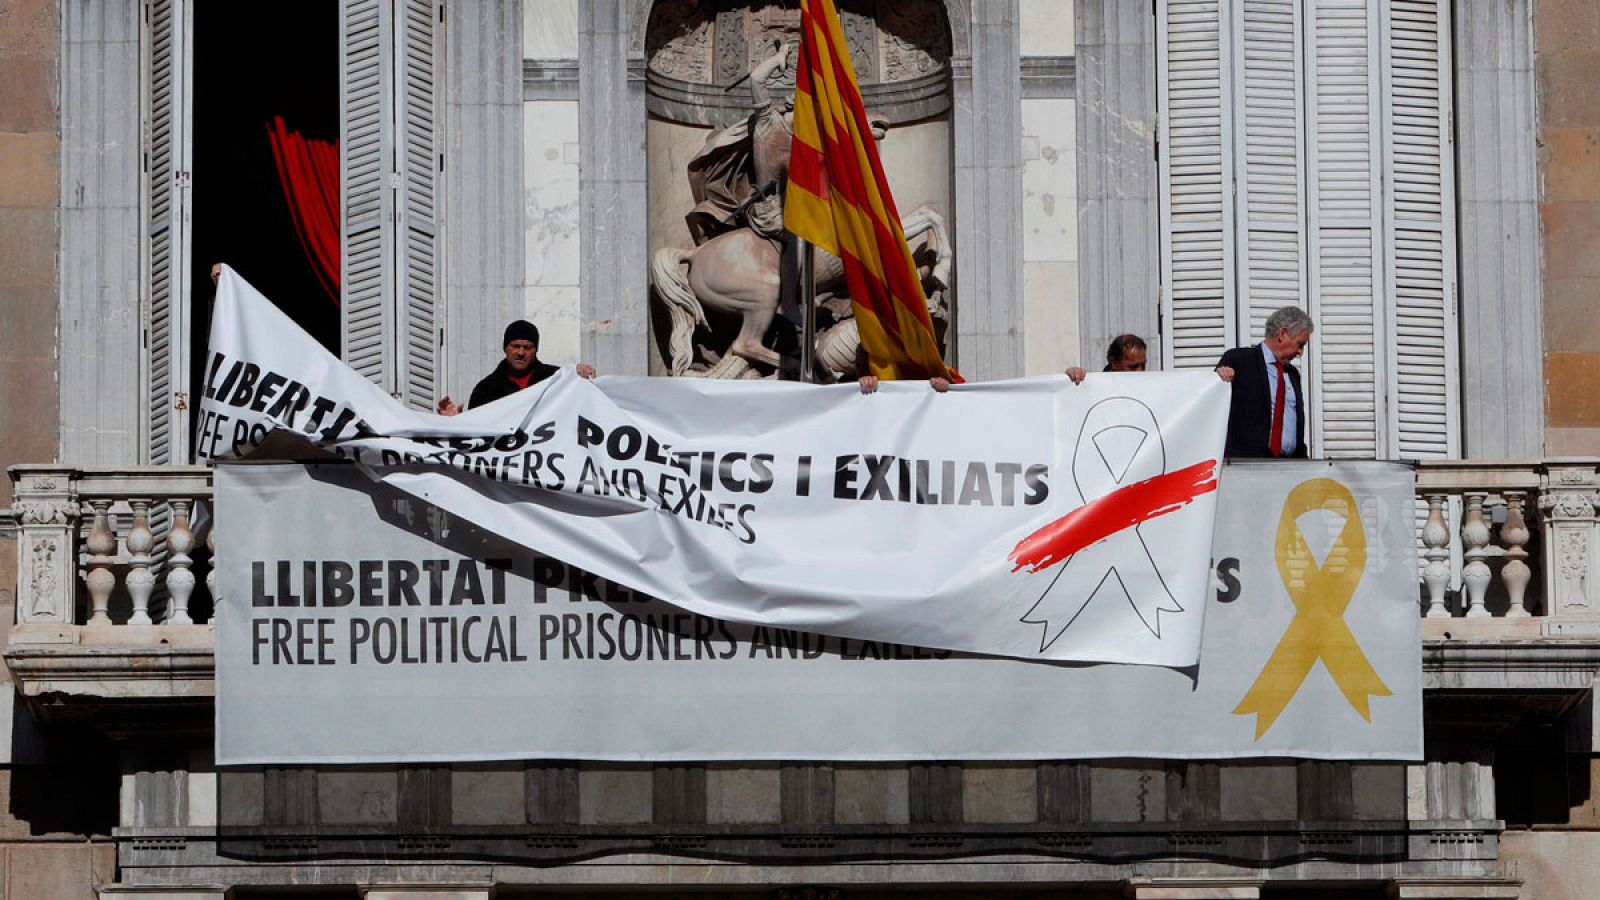 El presidente catalán, Quim Torra, ha tapado la pancarta del lazo amarillo en el Palau de la Generalitat con otra que reivindica la libertad de expresión siguiendo la recomendación del Síndic de Greuges de retirar los lazos amarillos en período elect